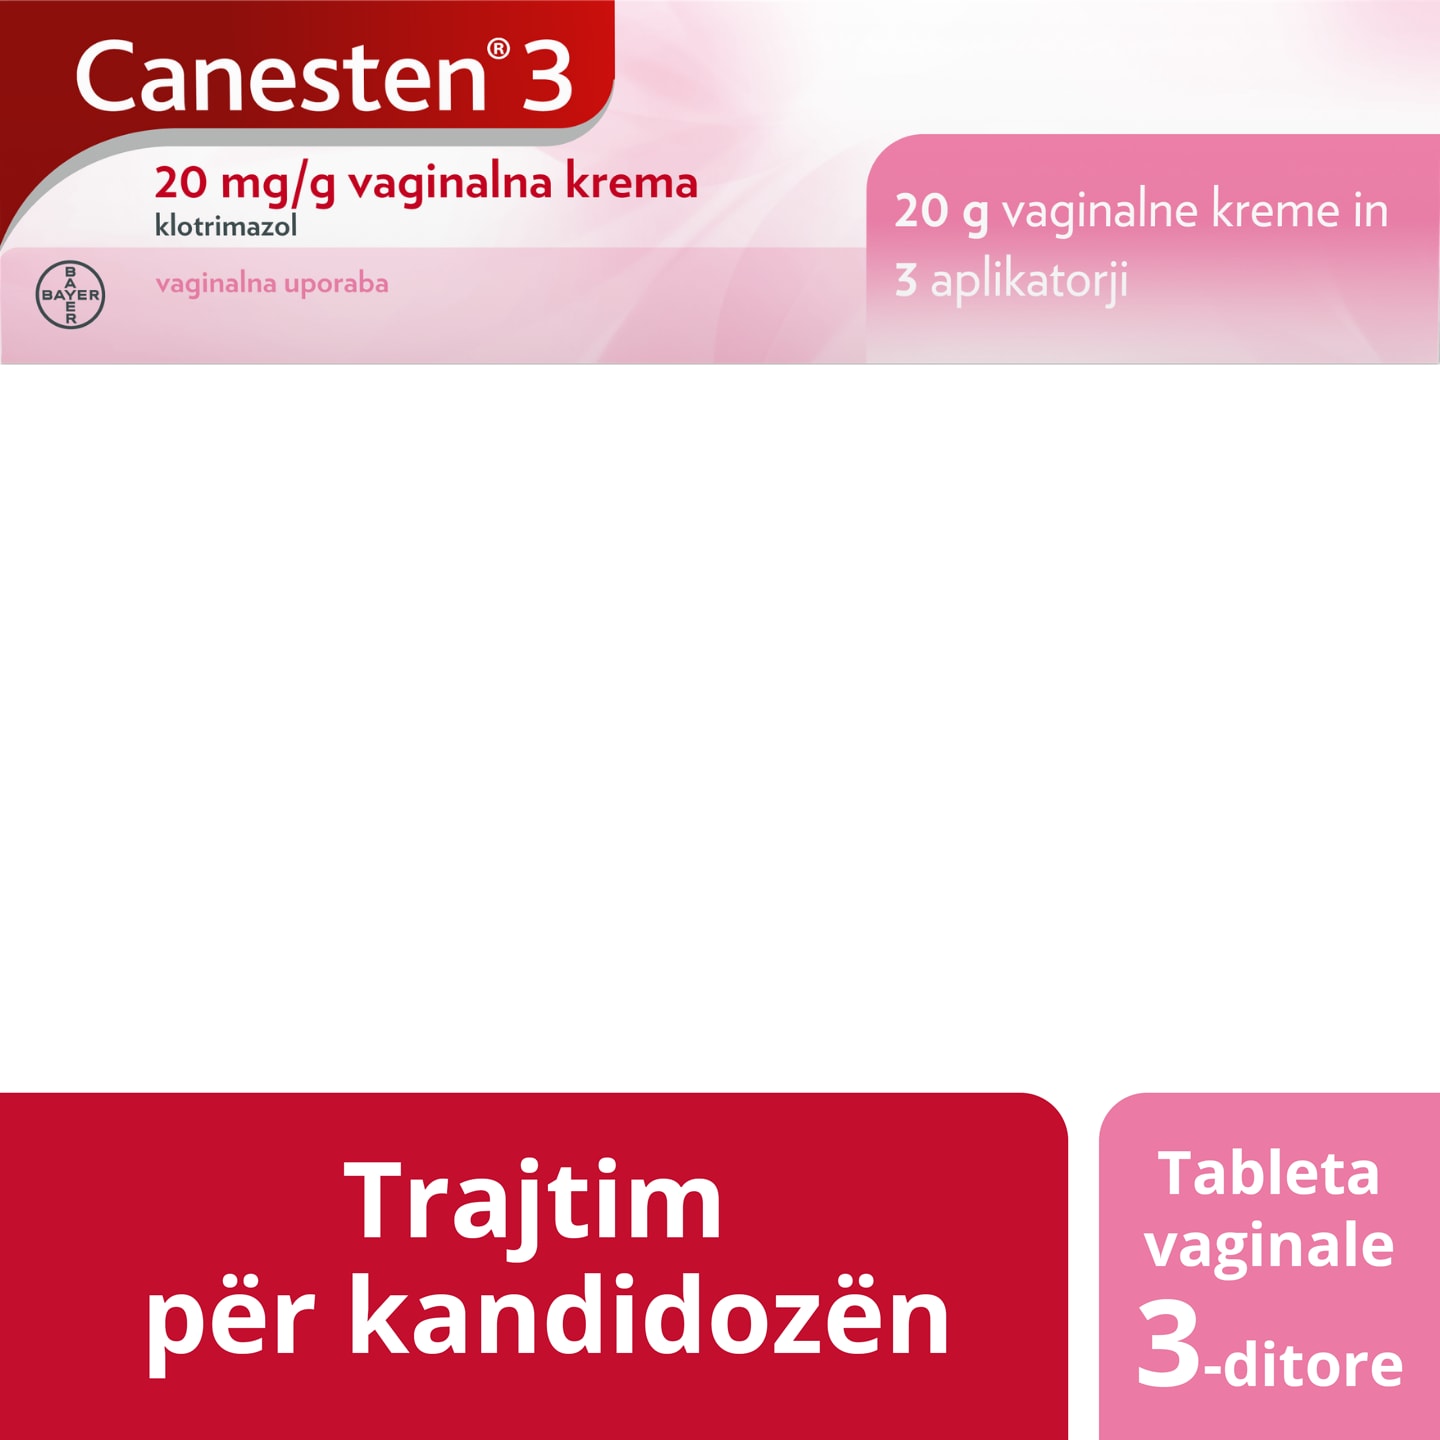 Krem për trajtim 3-ditor të kandidozës: Canesten® 3 20 mg/g krem vaginal për mjekim të kandidozës dhe aplikatorët